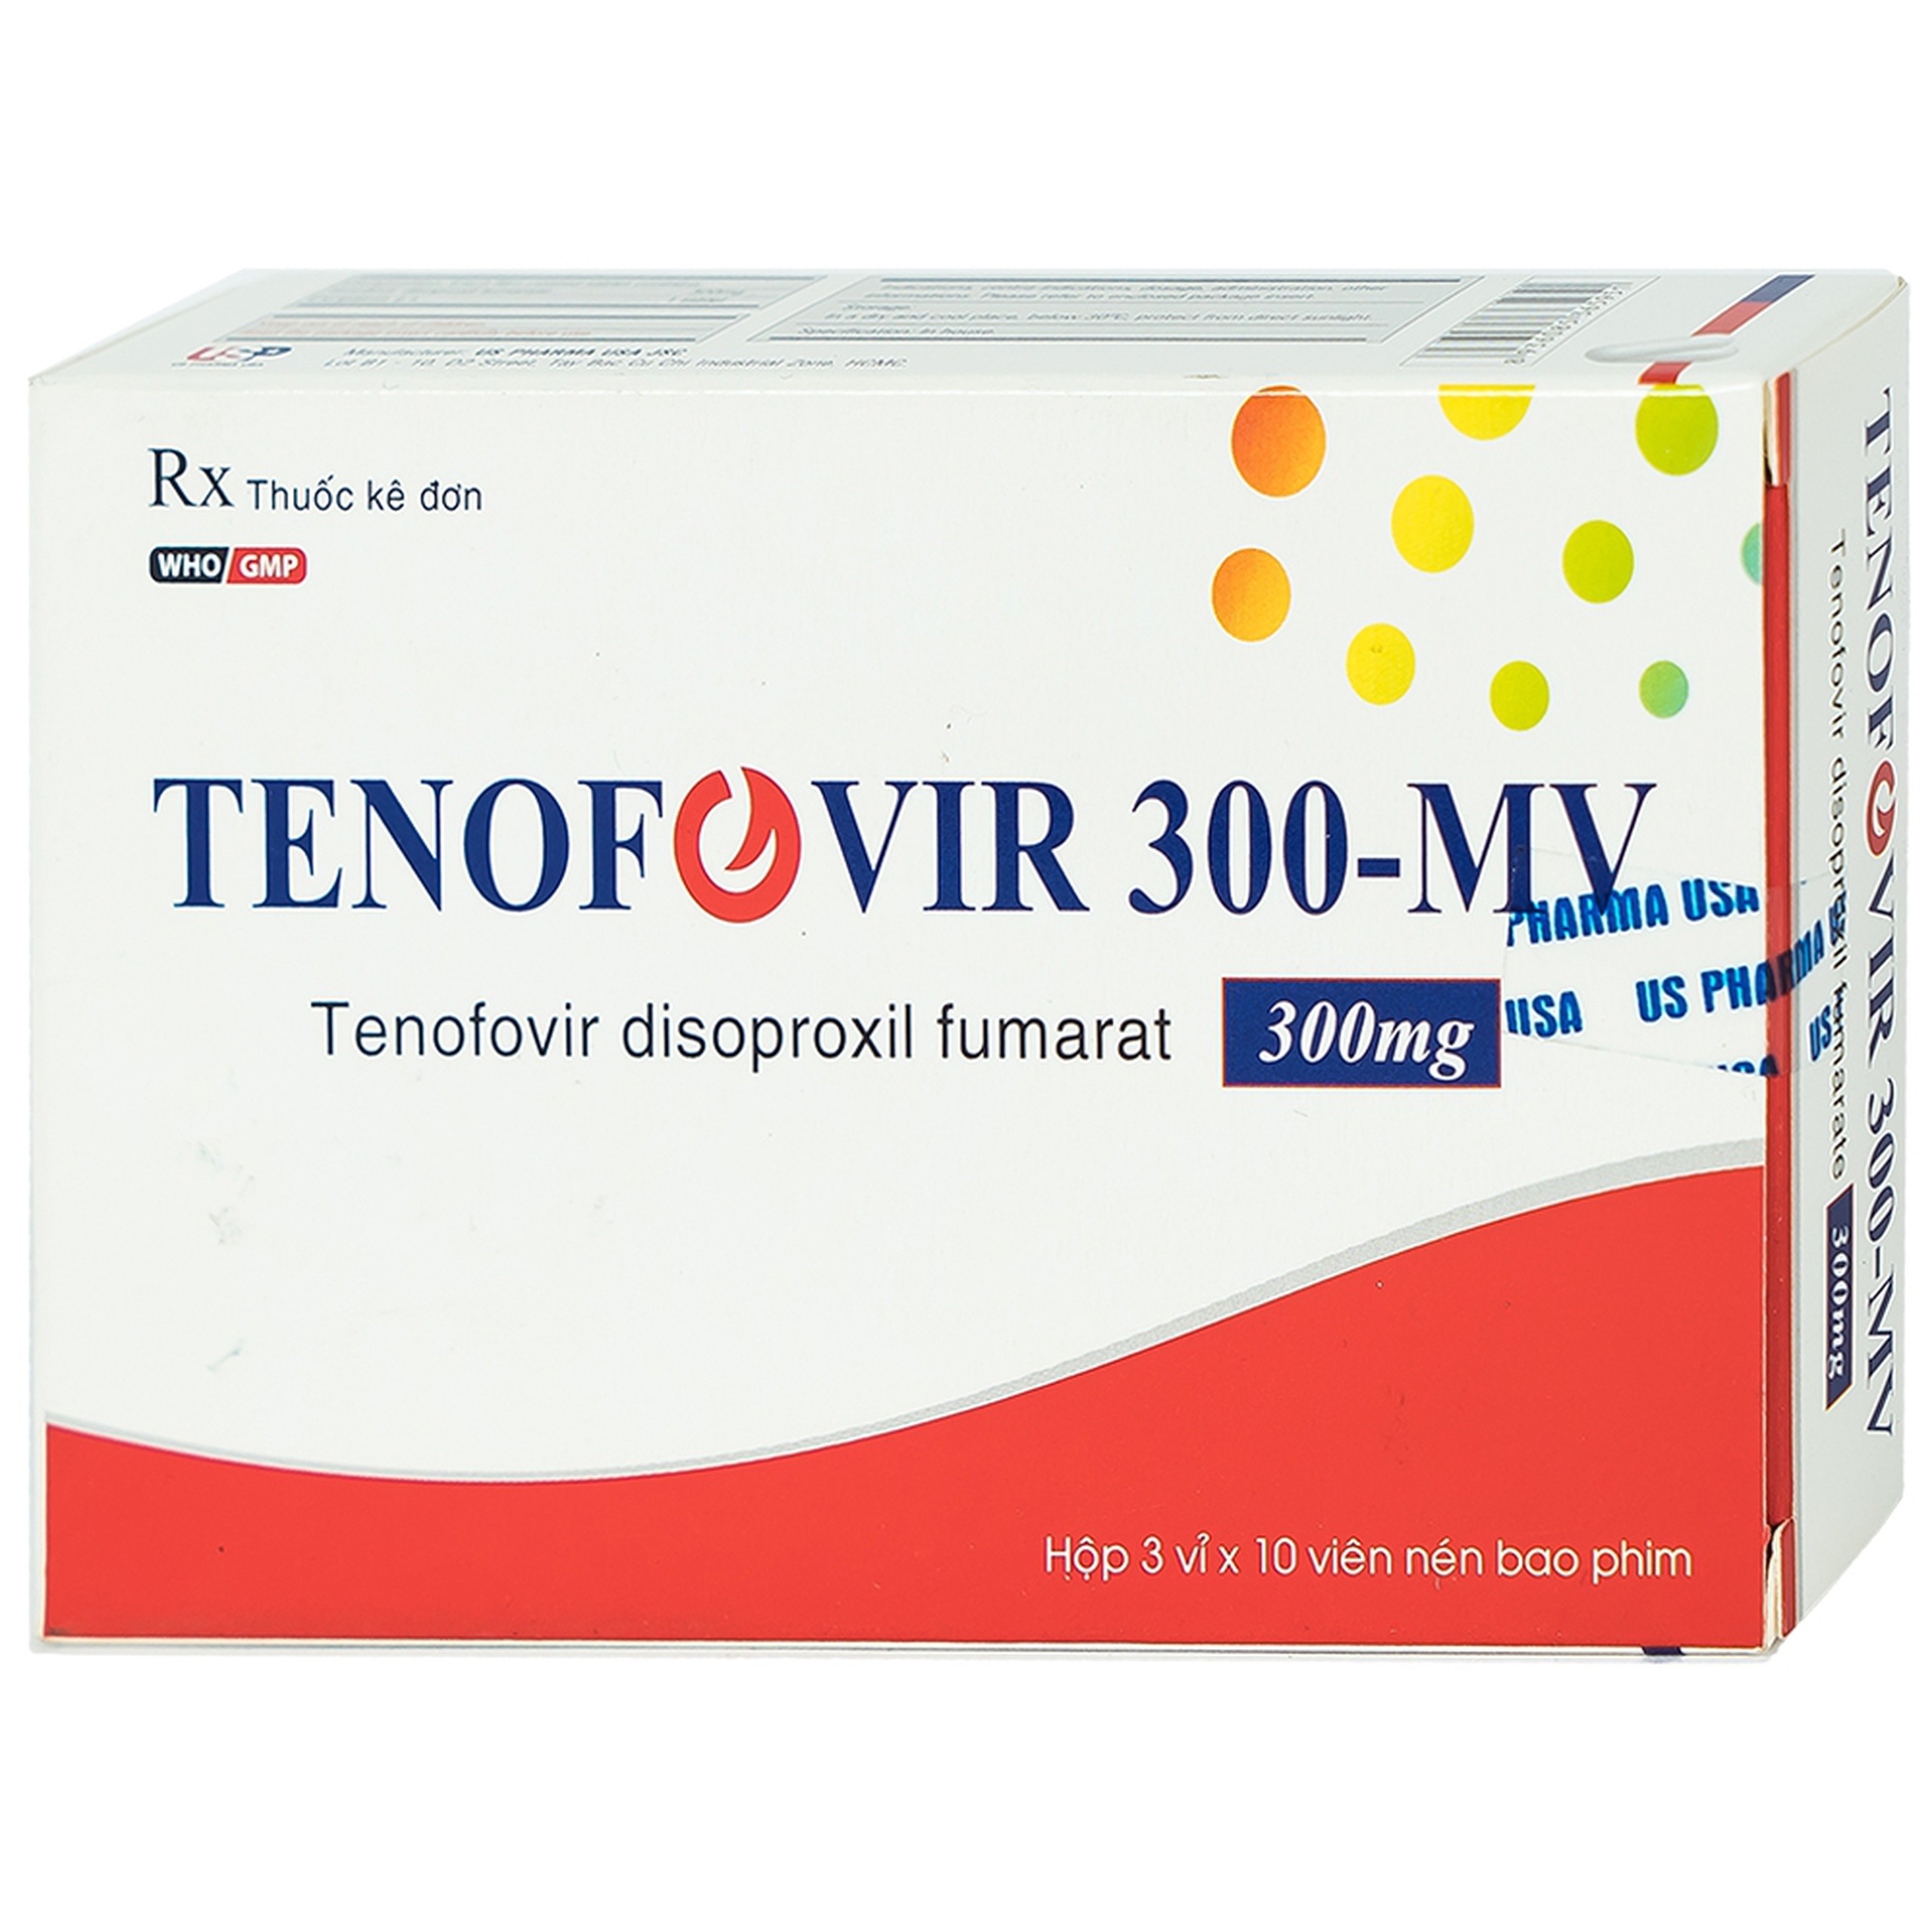 Thuốc Tenofovir 300-MV US Pharma điều trị nhiễm HIV-1, dự phòng sau phơi nhiễm HIV (3 vỉ x 10 viên)